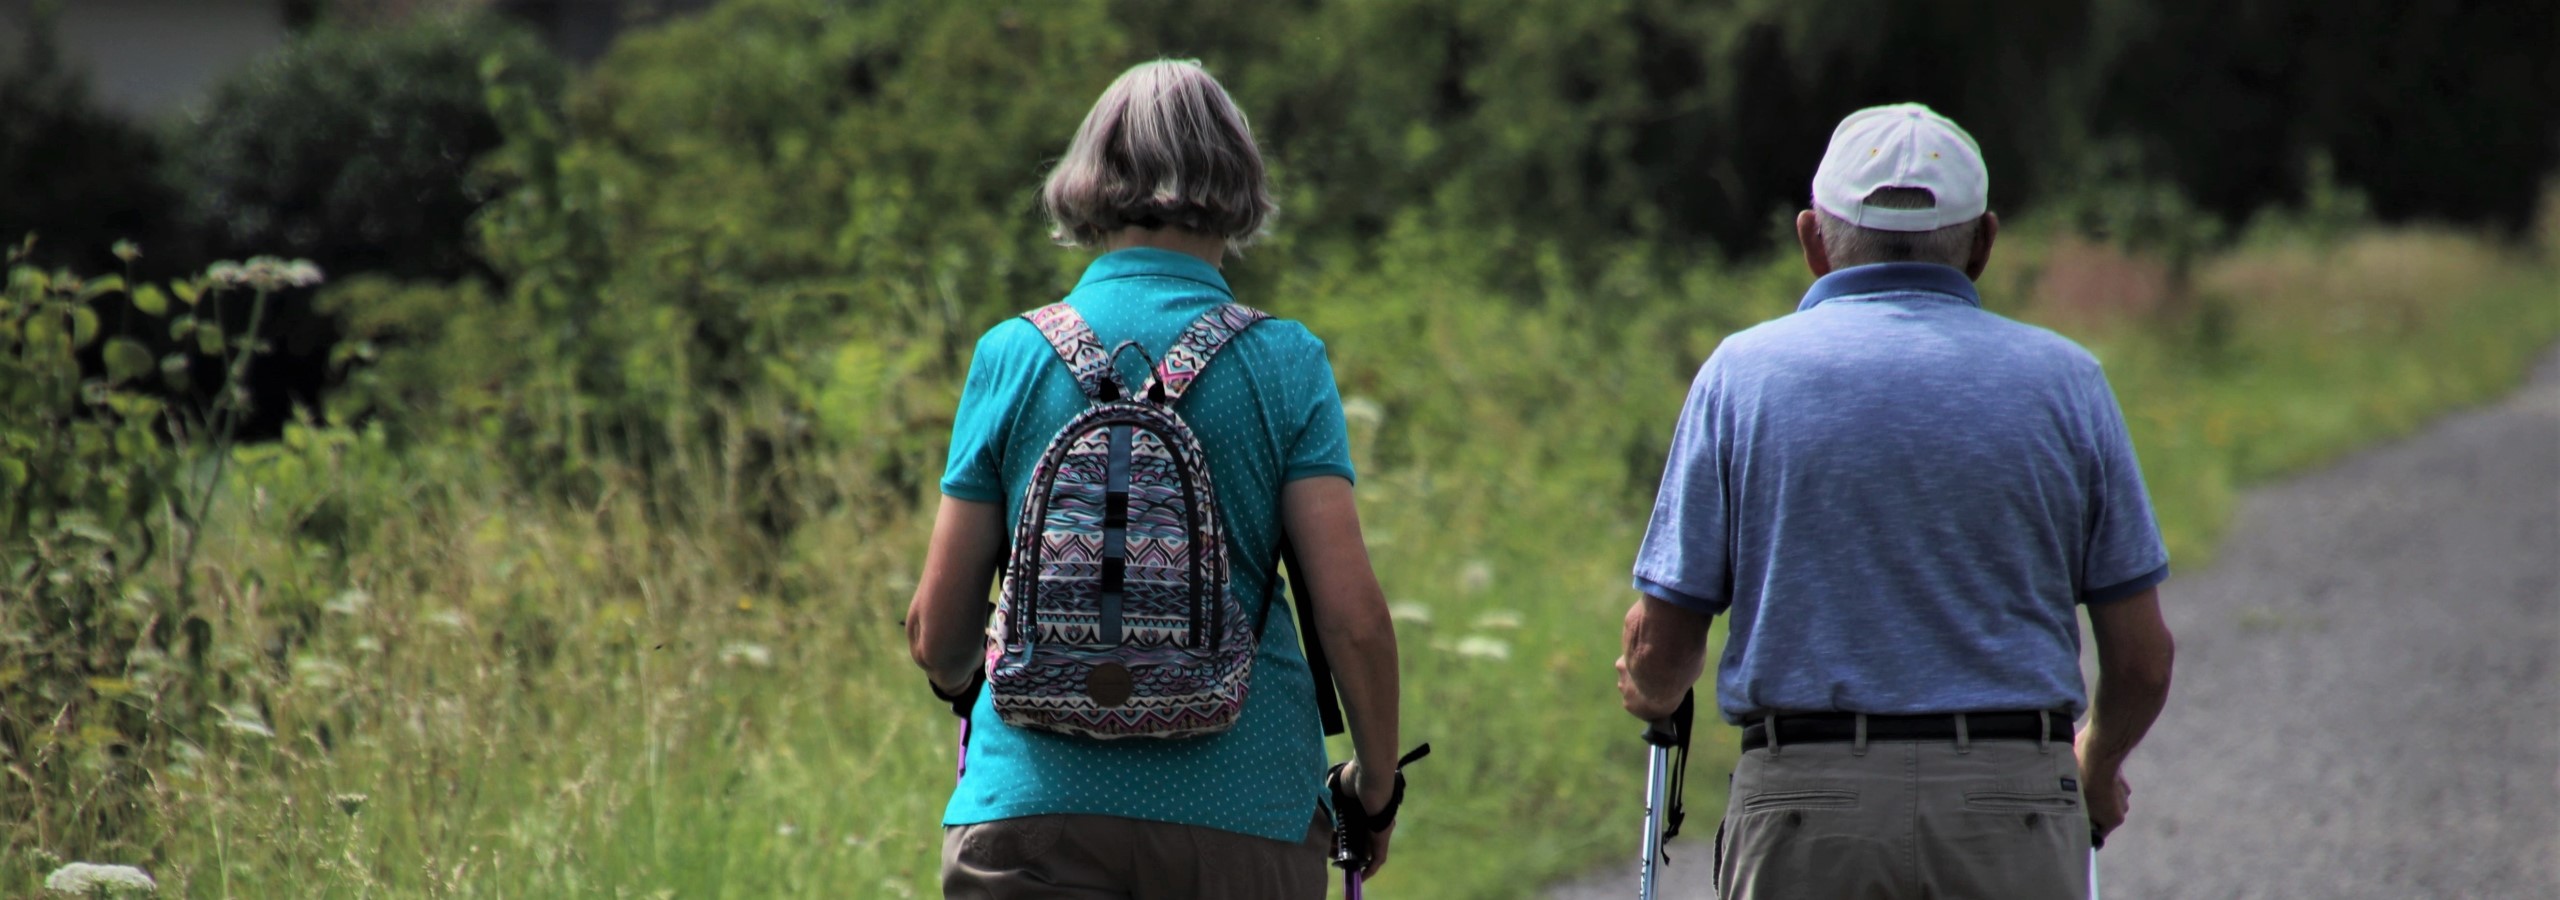 Senioren - Ehepaar beim Spaziergang durch die Natur - Panoramaschnitt